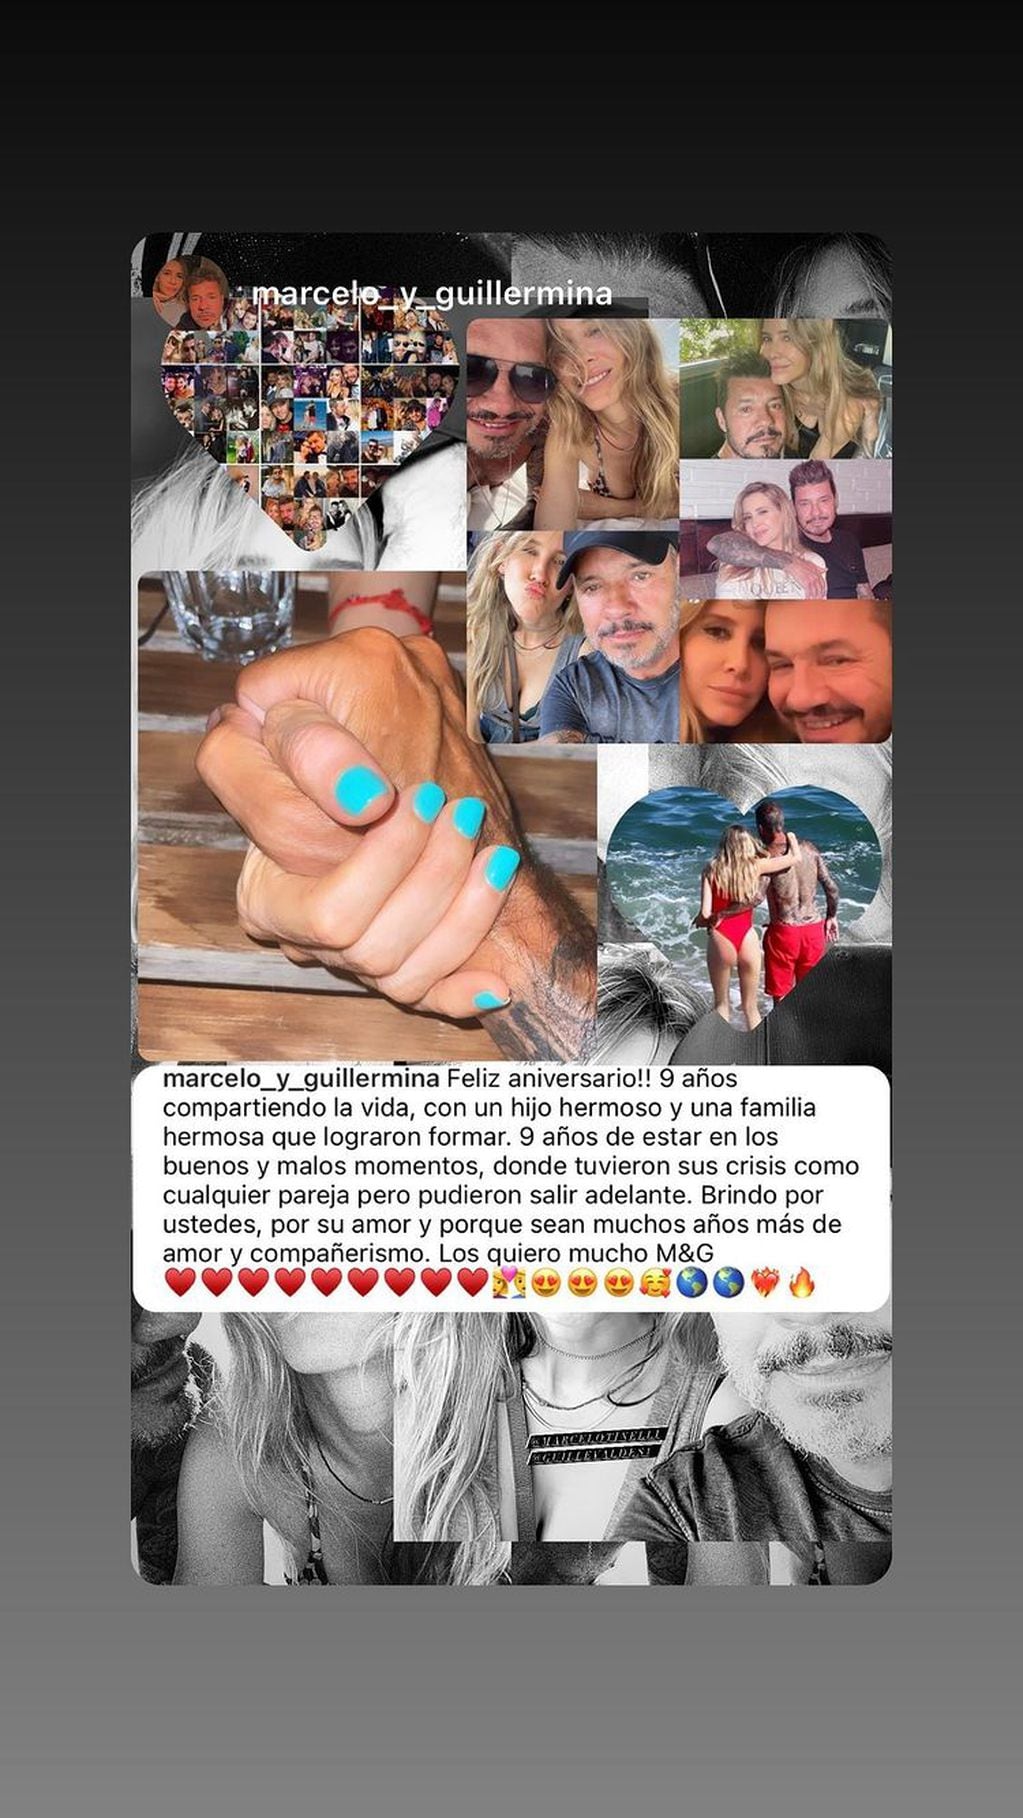 Guillermina Valdes y Marcelo Tinelli celebraron sus 9 años de amor en las redes sociales